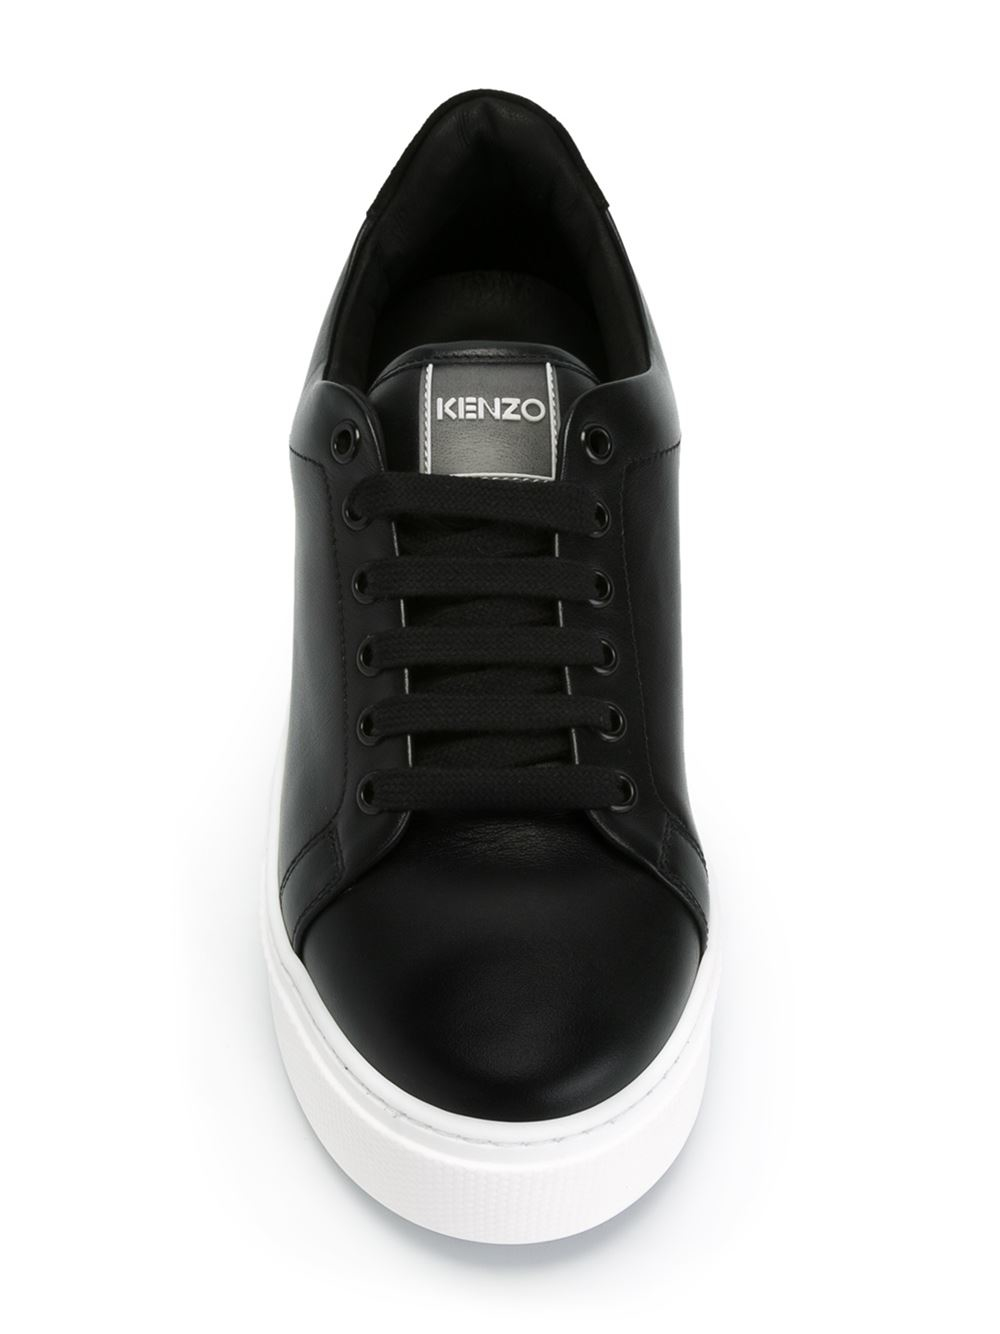 KENZO Platform Sneakers in Black - Lyst